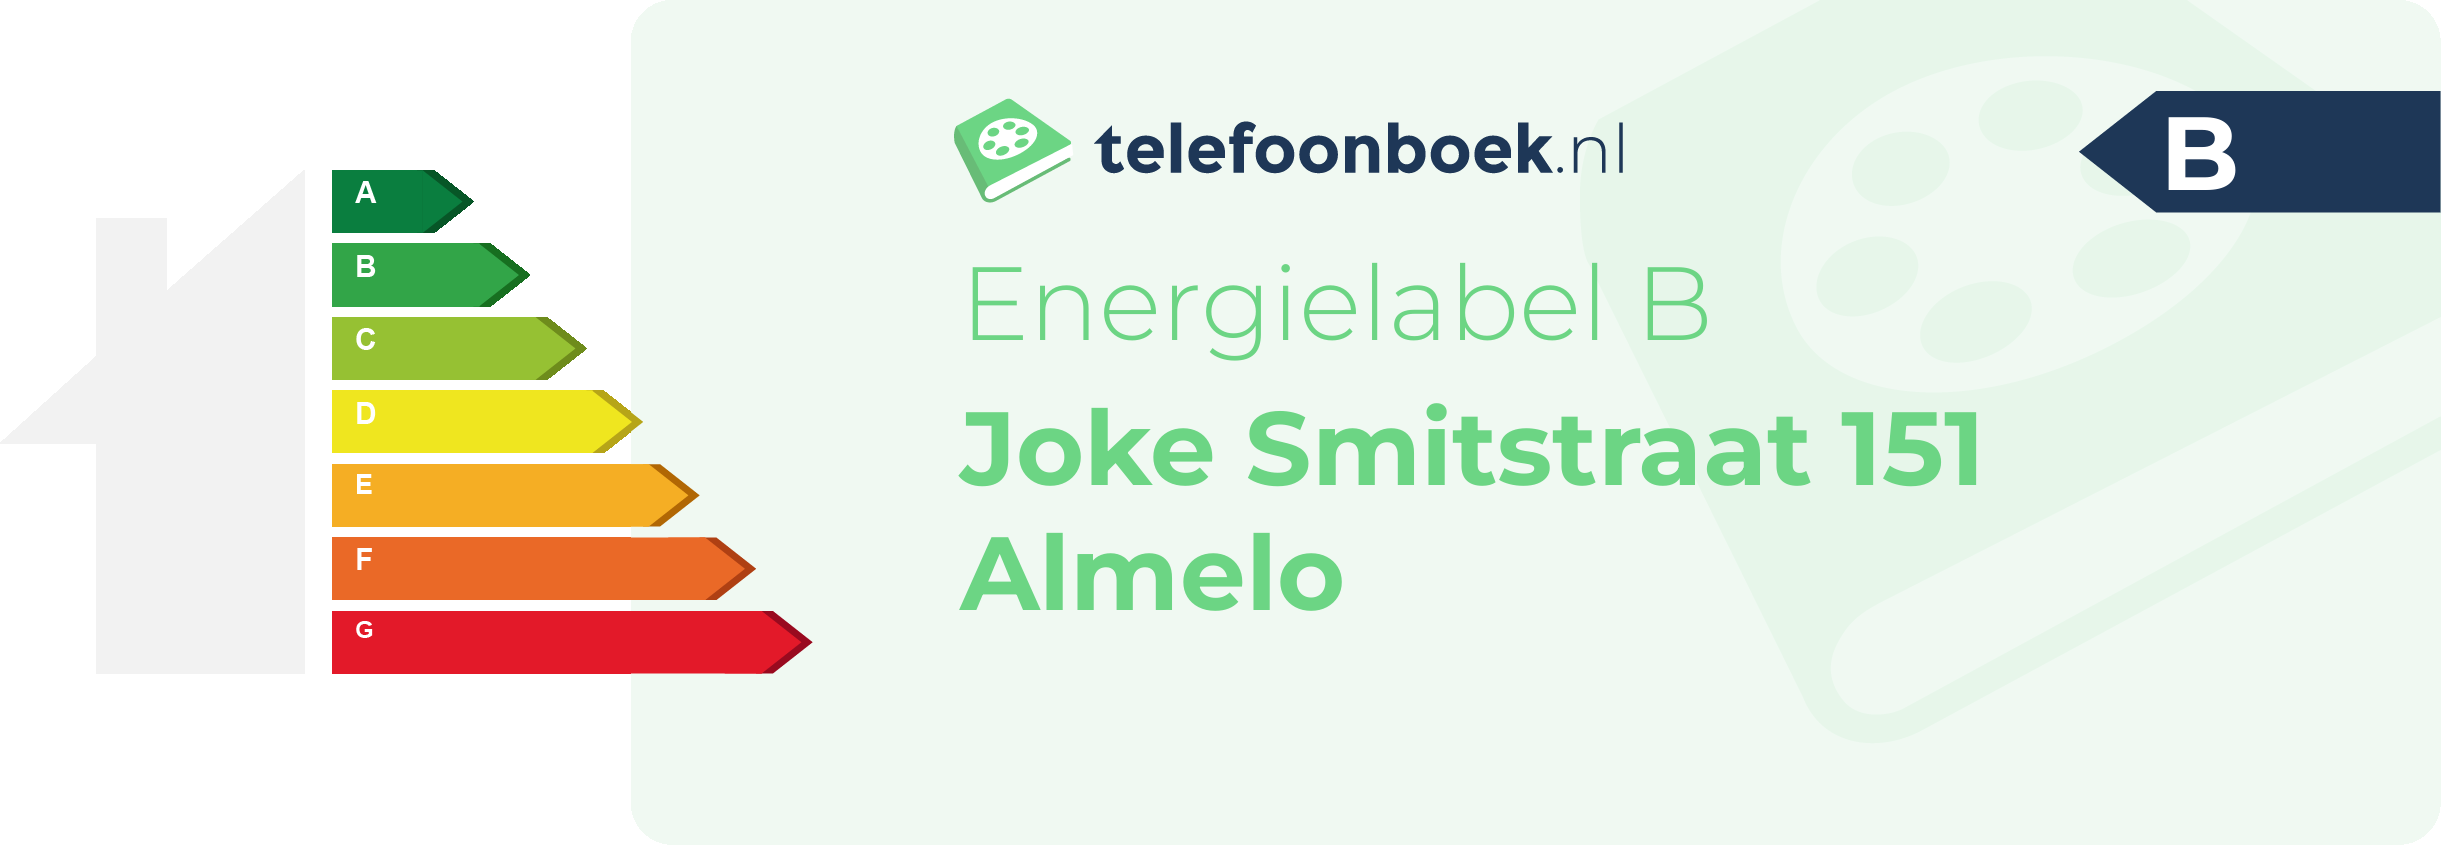 Energielabel Joke Smitstraat 151 Almelo